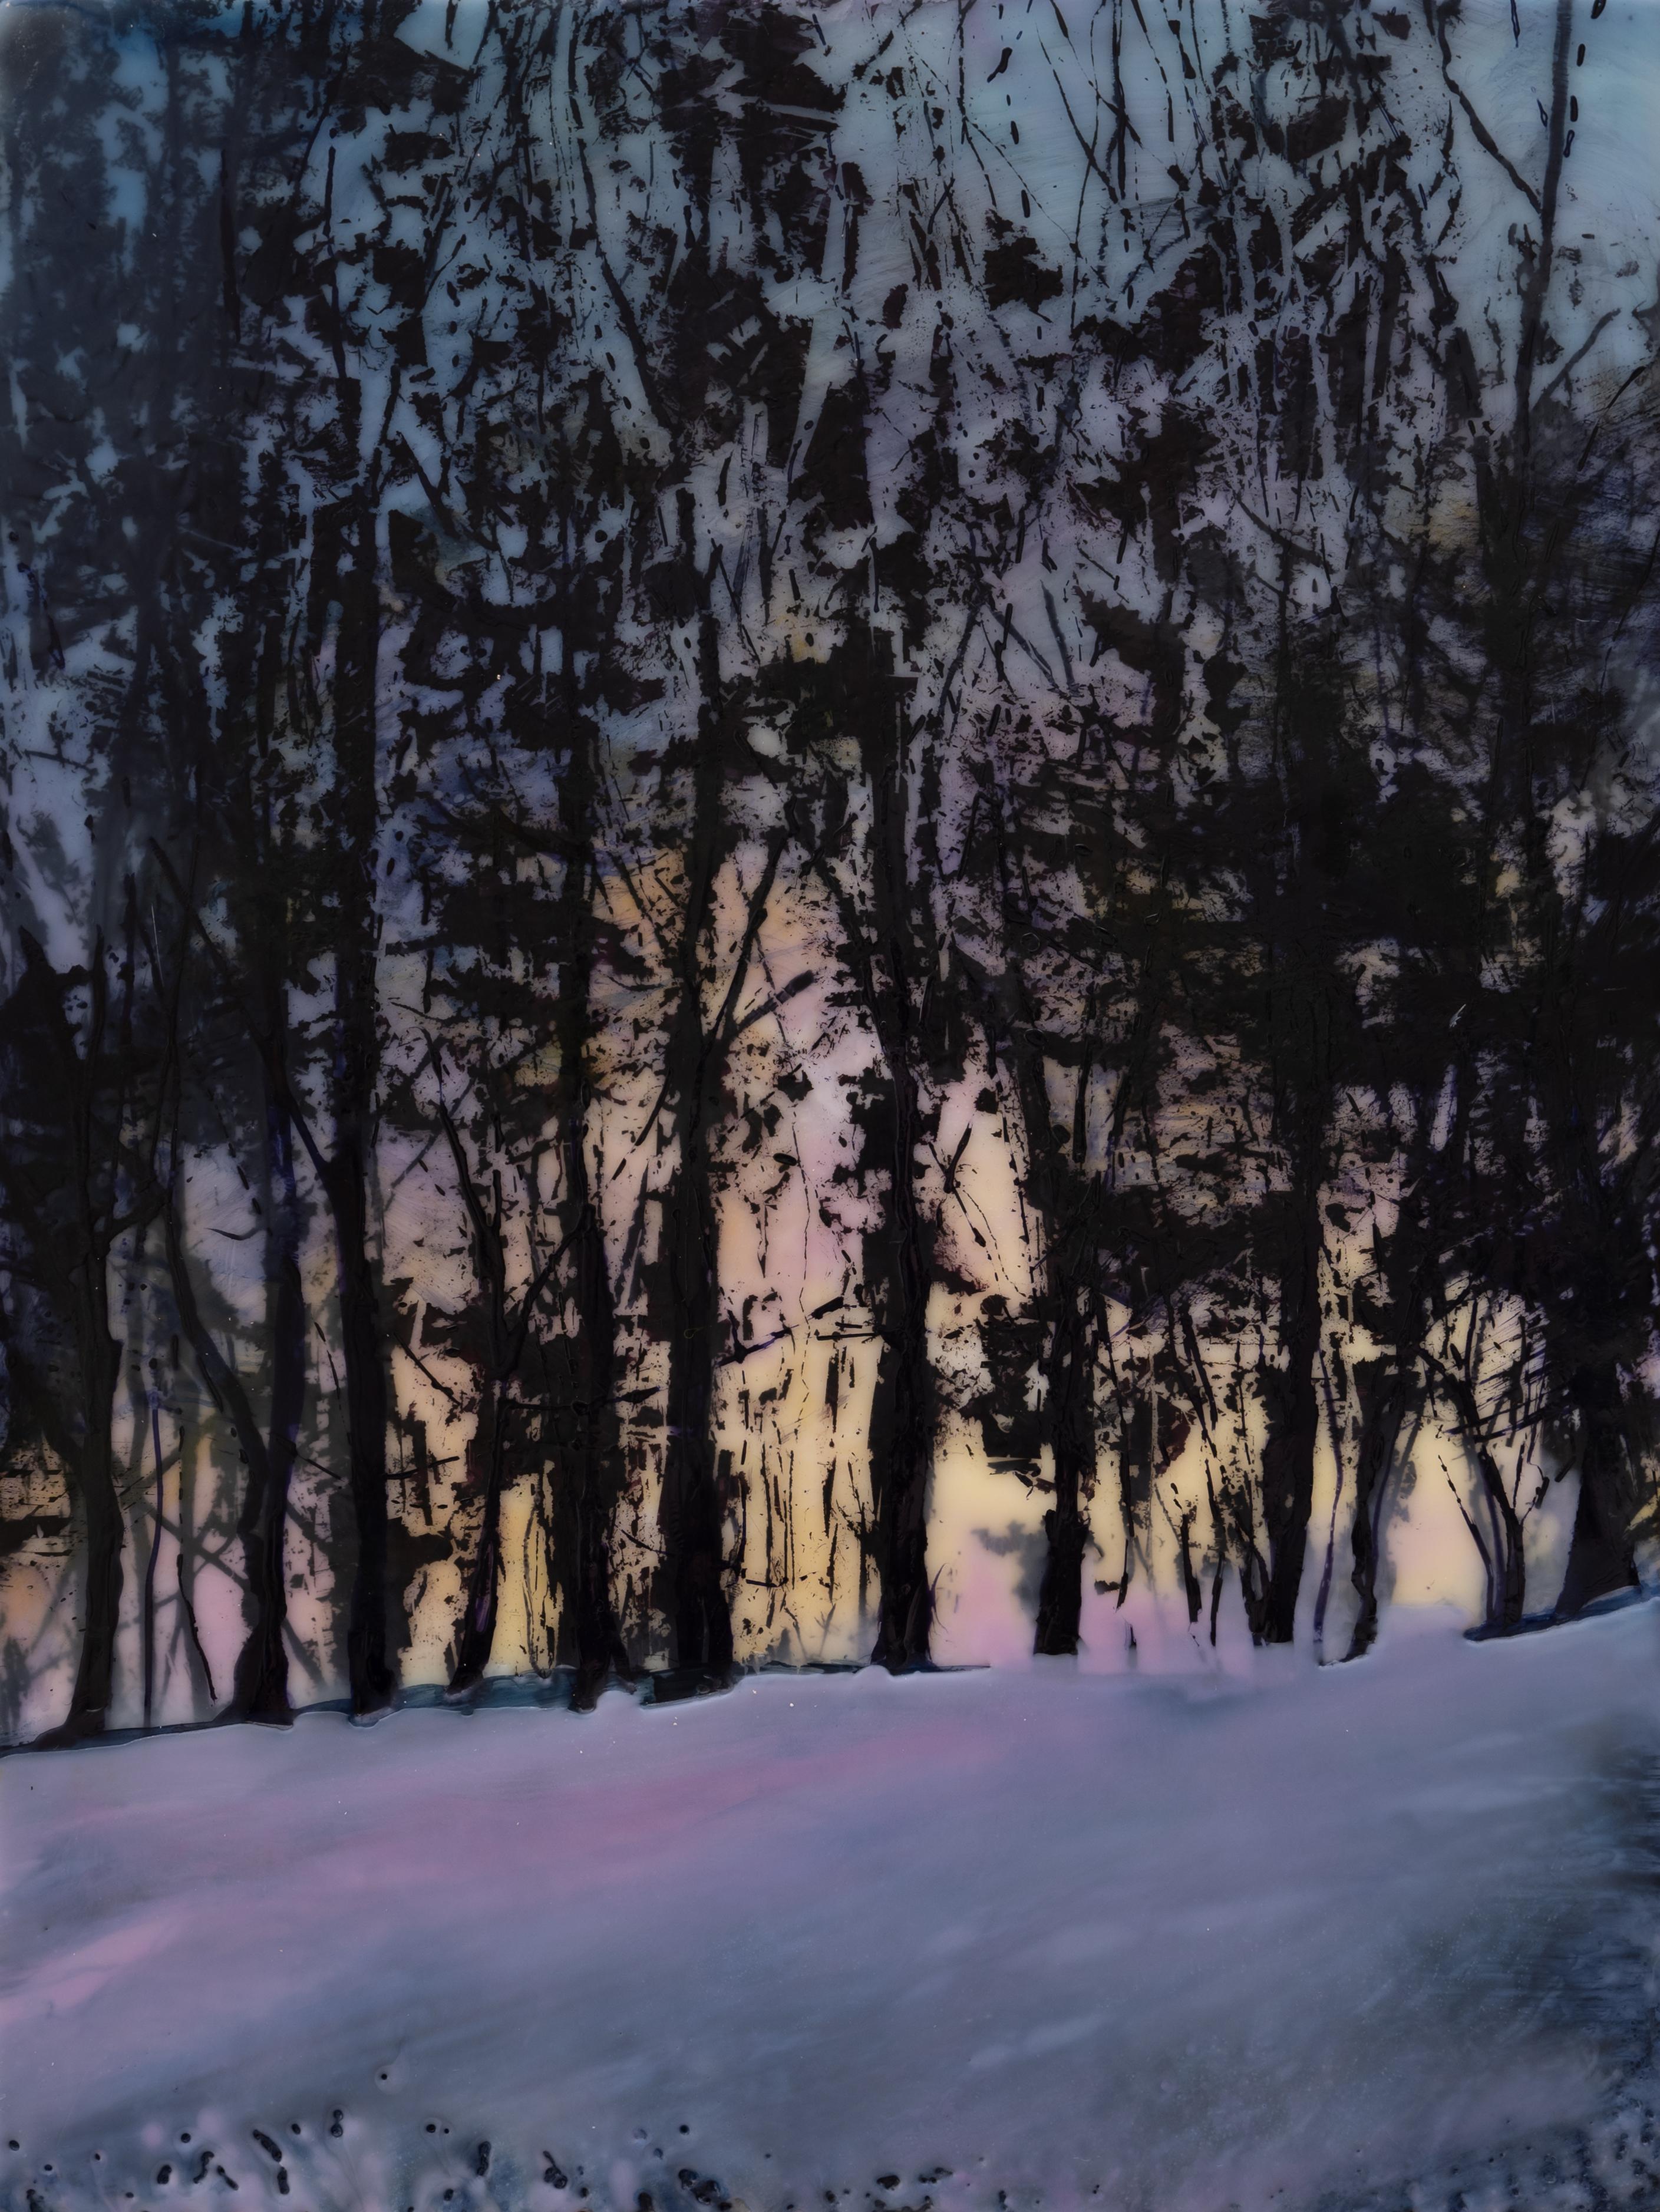 Spring Snow (Zeitgenössisches Enkaustikgemälde eines Sonnenuntergangs hinter einer dunklen Baumkrone)